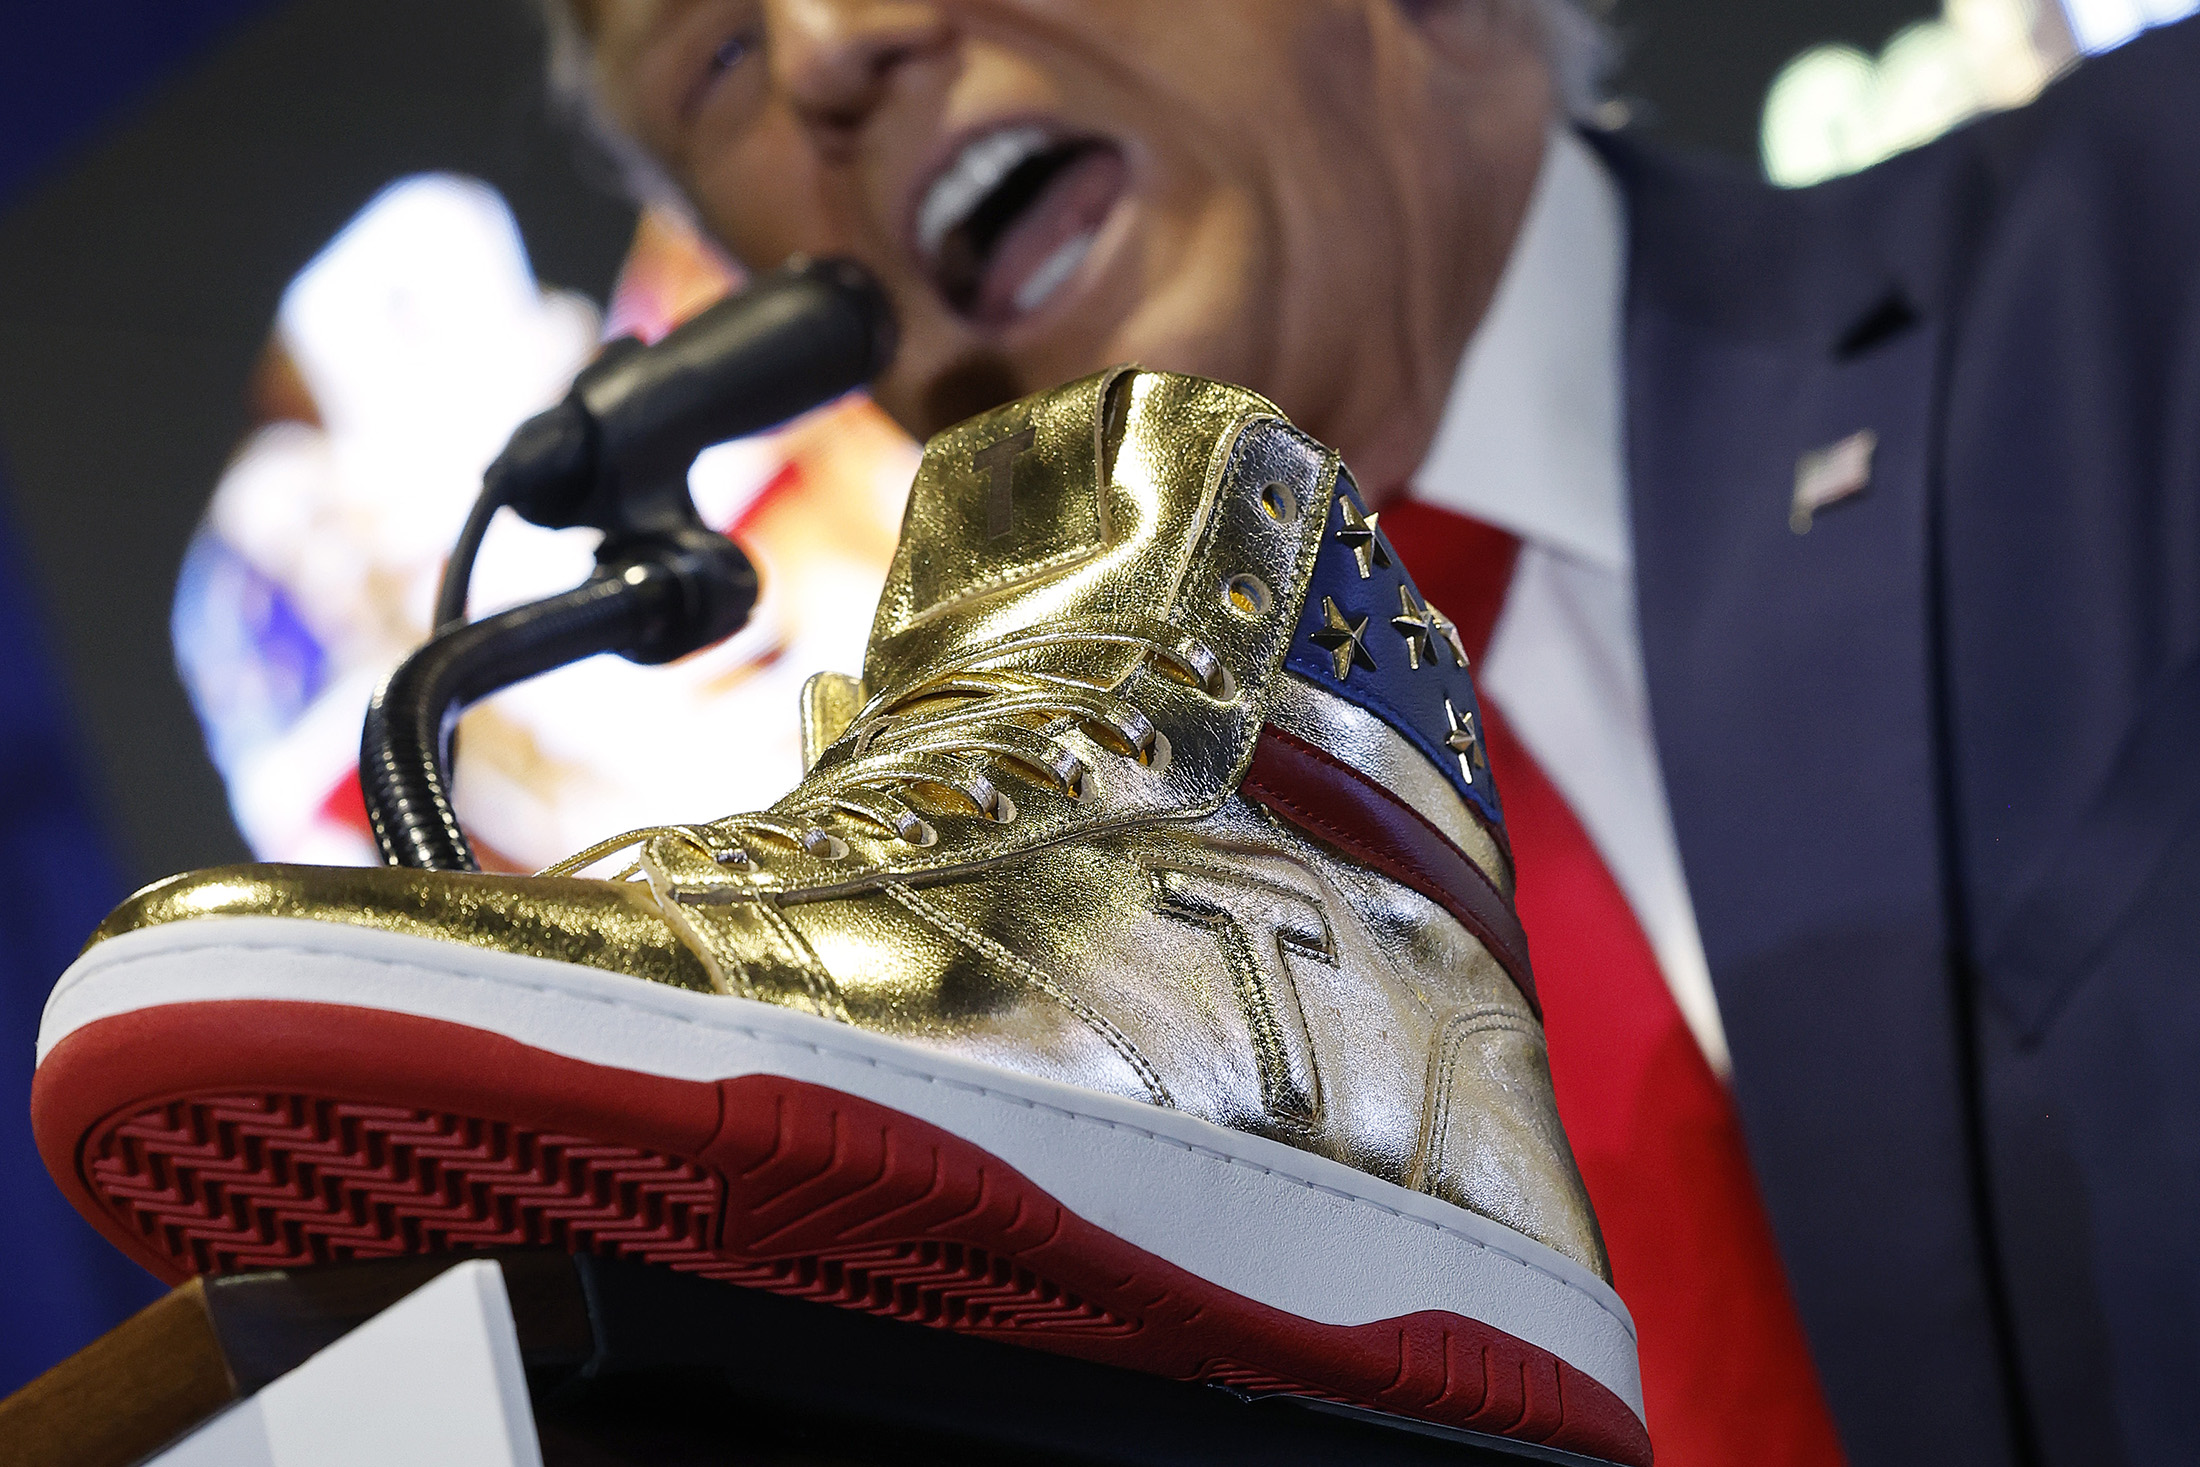 Trump Hawks Gold, Self-Branded $399 Sneaker as Legal Fees Mount - Bloomberg